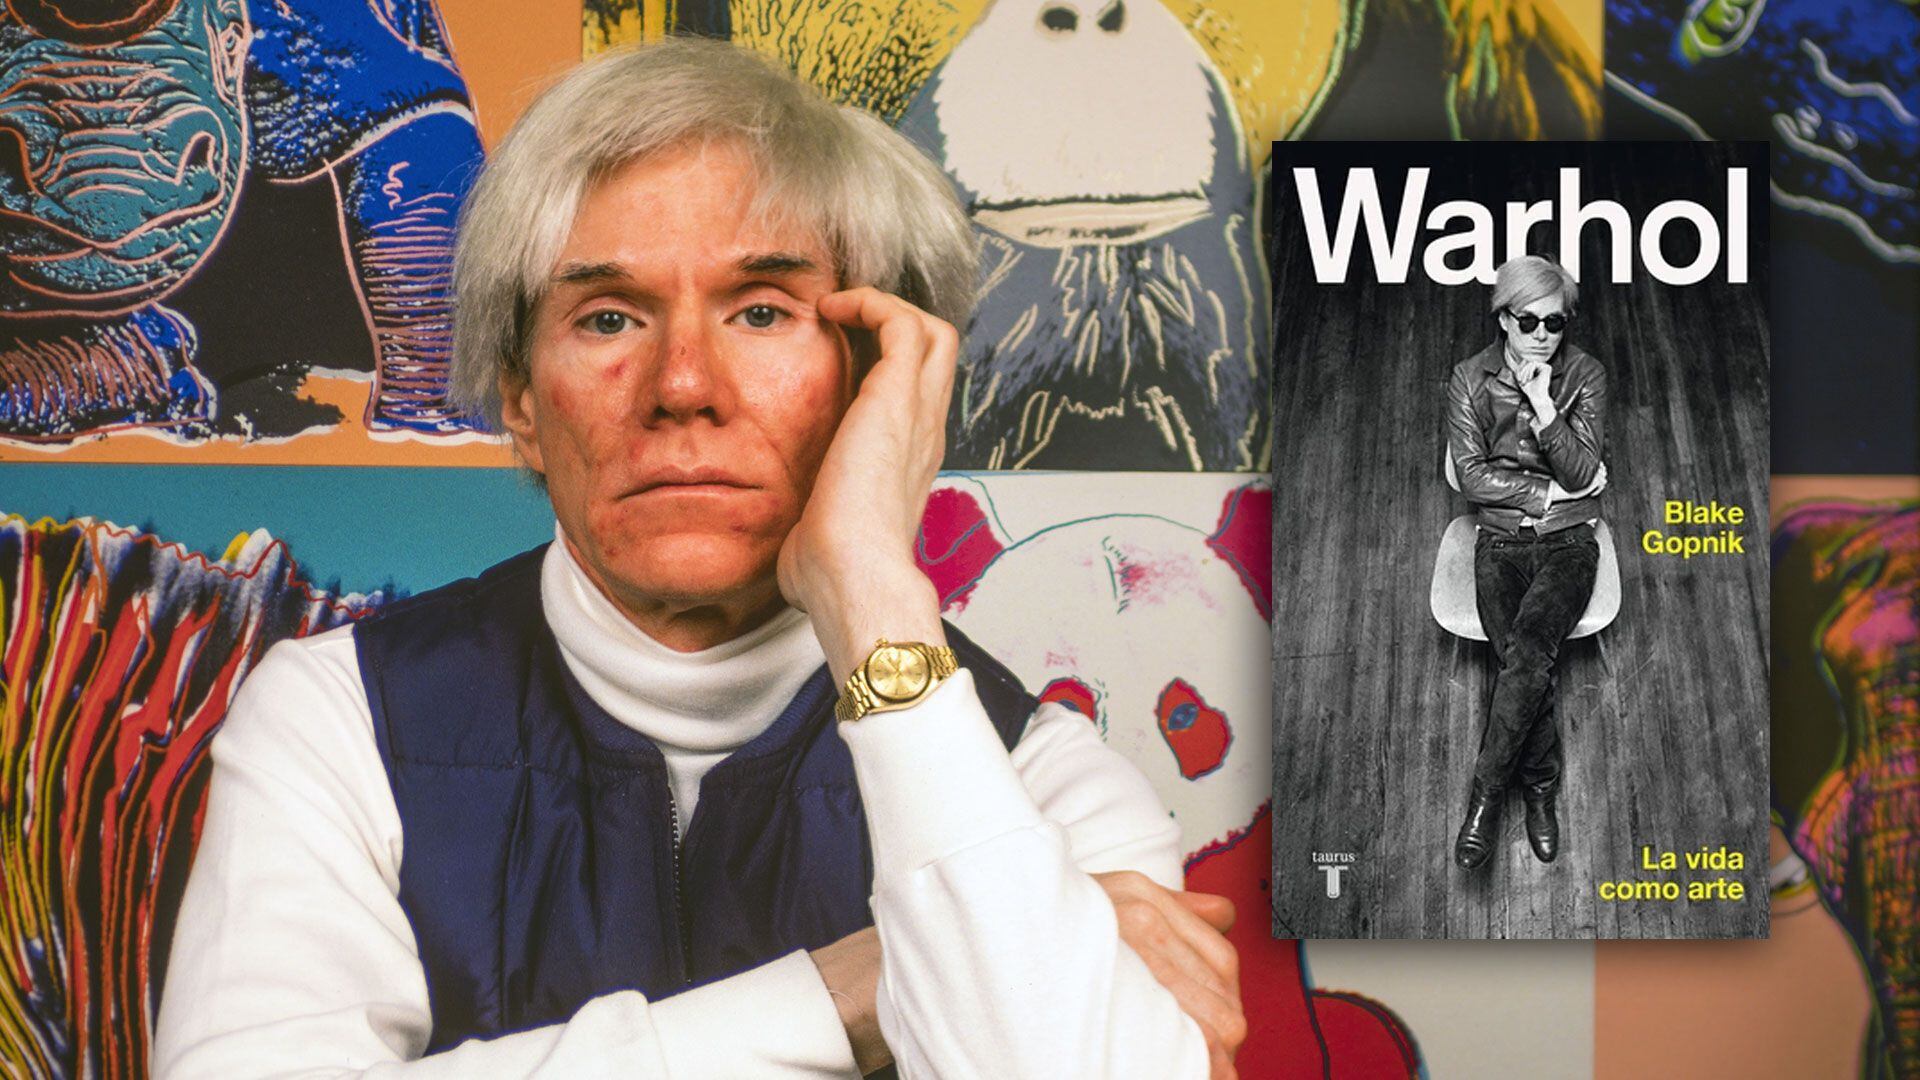 Blake Gopnik Andy Warhol